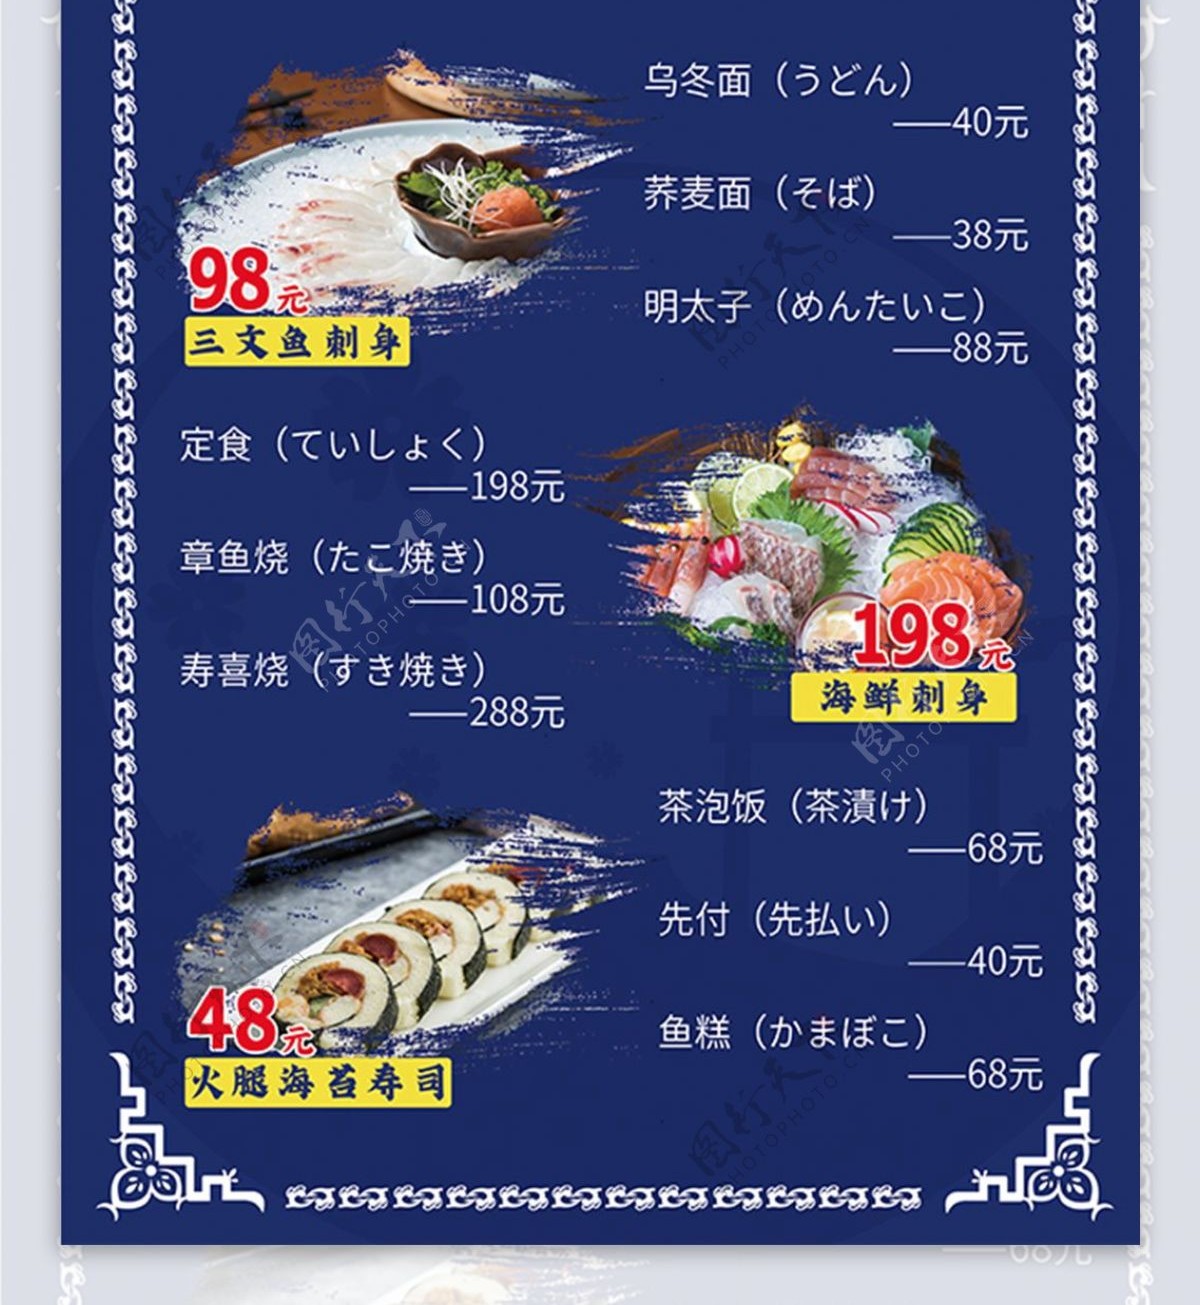 日本料理DM宣传单